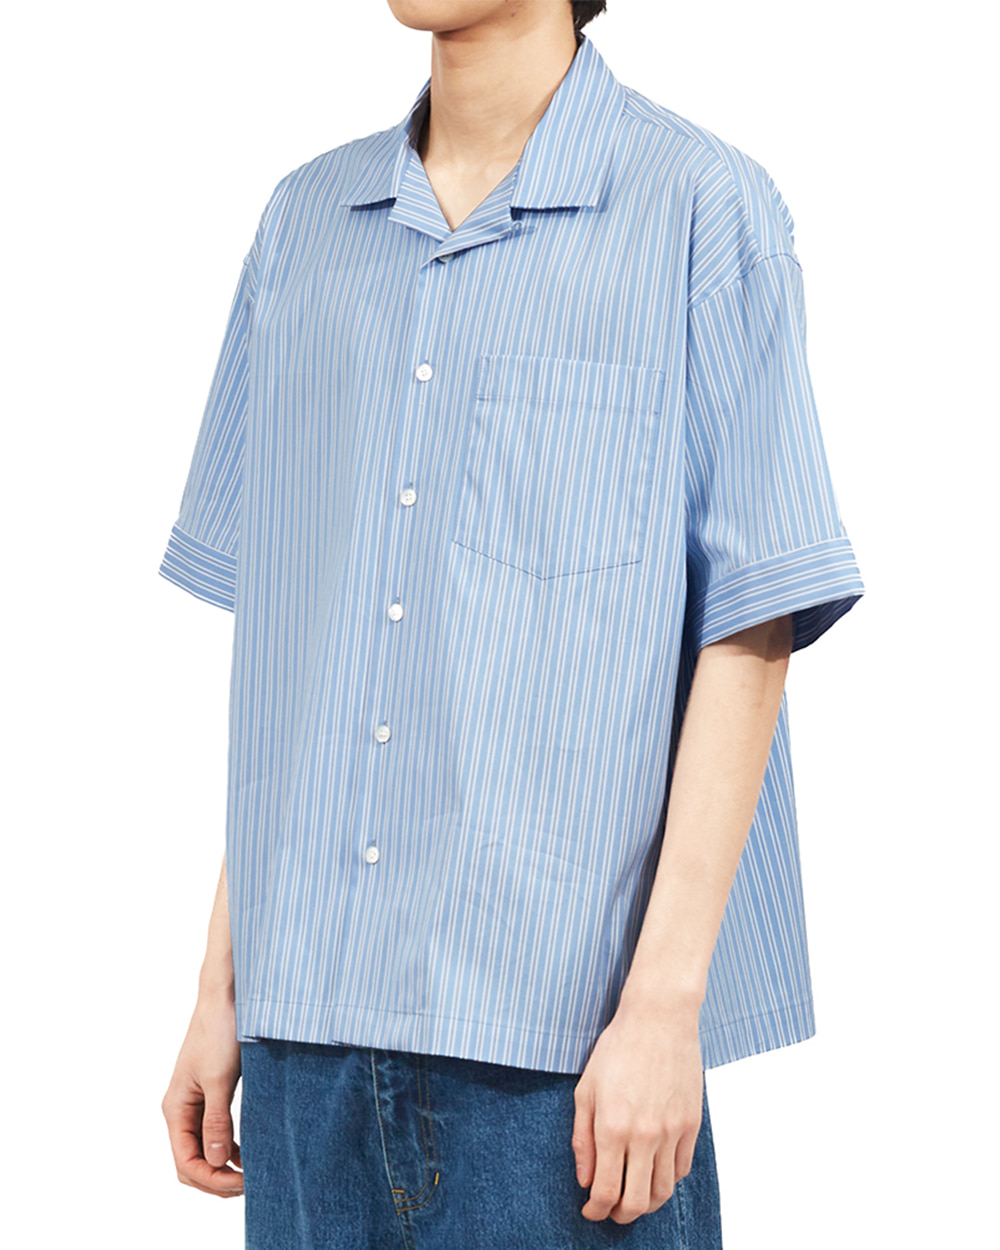 마티스더큐레이터 Open half shirts (Blue stripe)